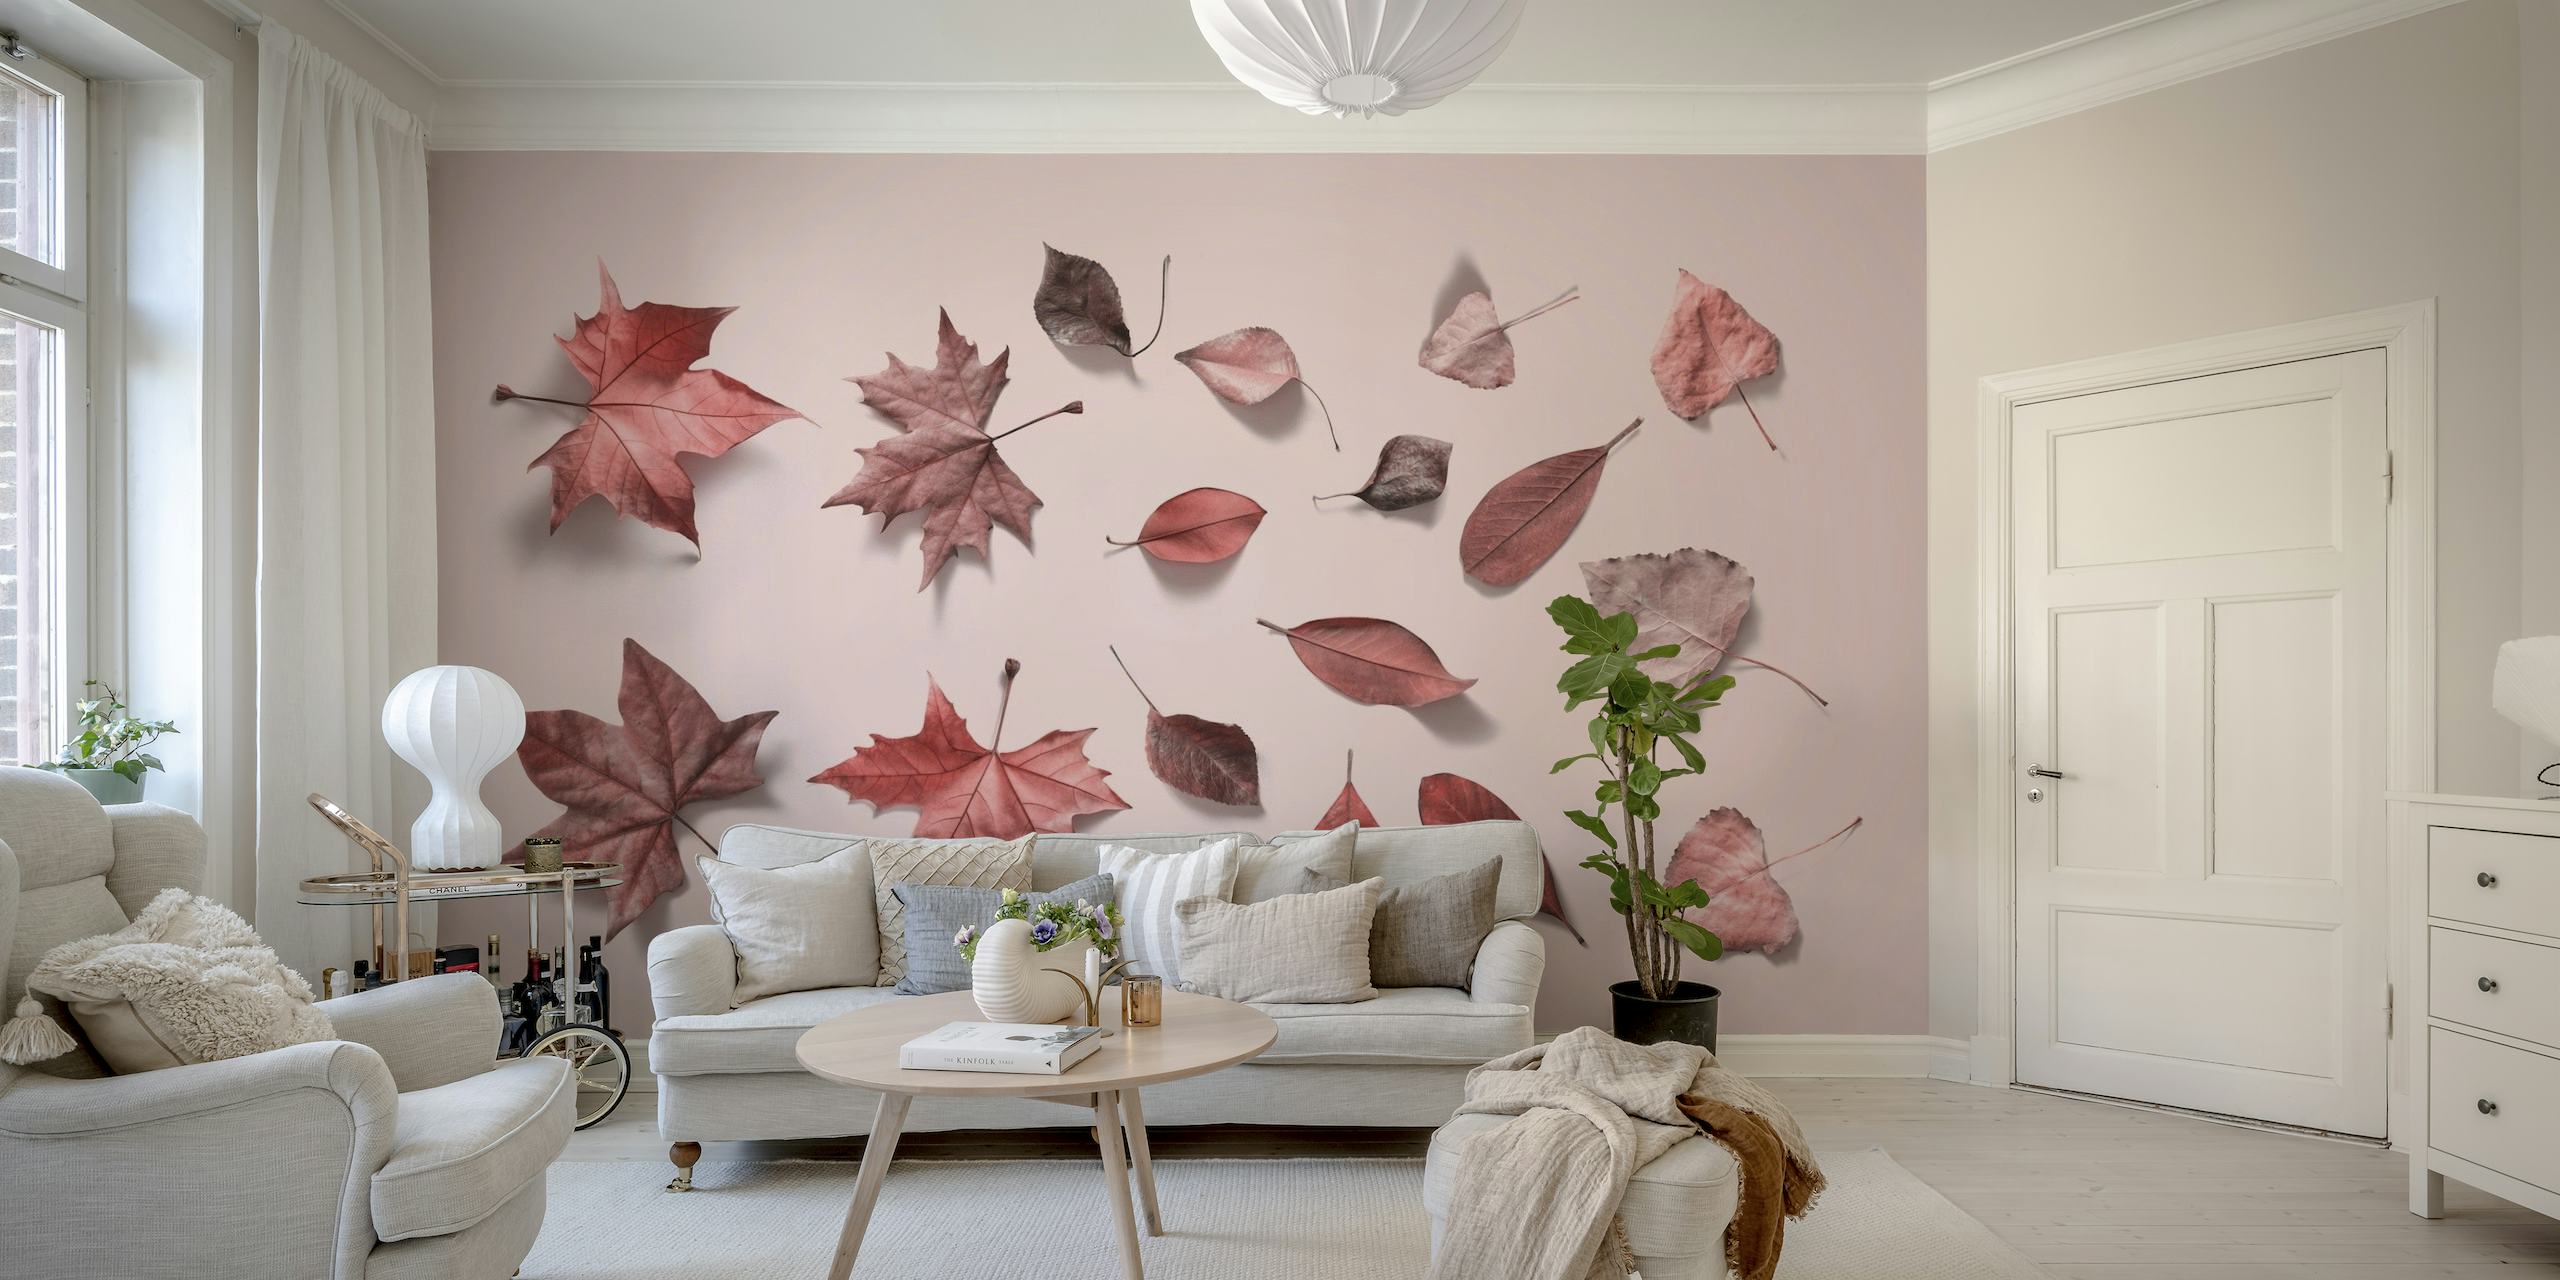 Papier peint rose clair avec un arrangement dispersé de feuilles d'automne dans diverses nuances de rose.